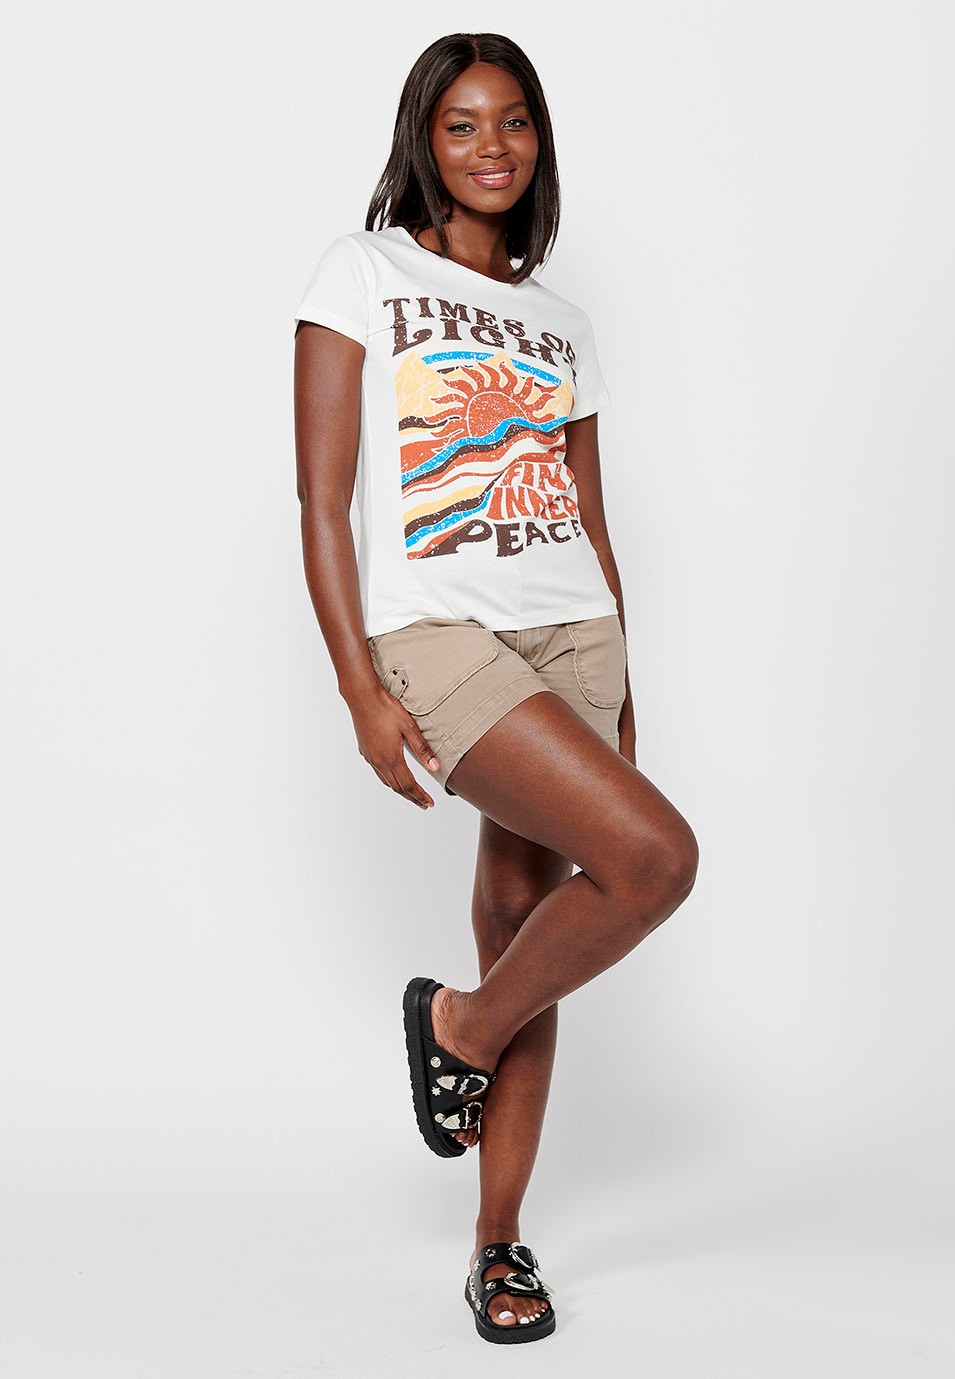 Damen-T-Shirt aus Baumwolle mit kurzen Ärmeln, Rundhalsausschnitt und ecrufarbenem Aufdruck auf der Vorderseite 4